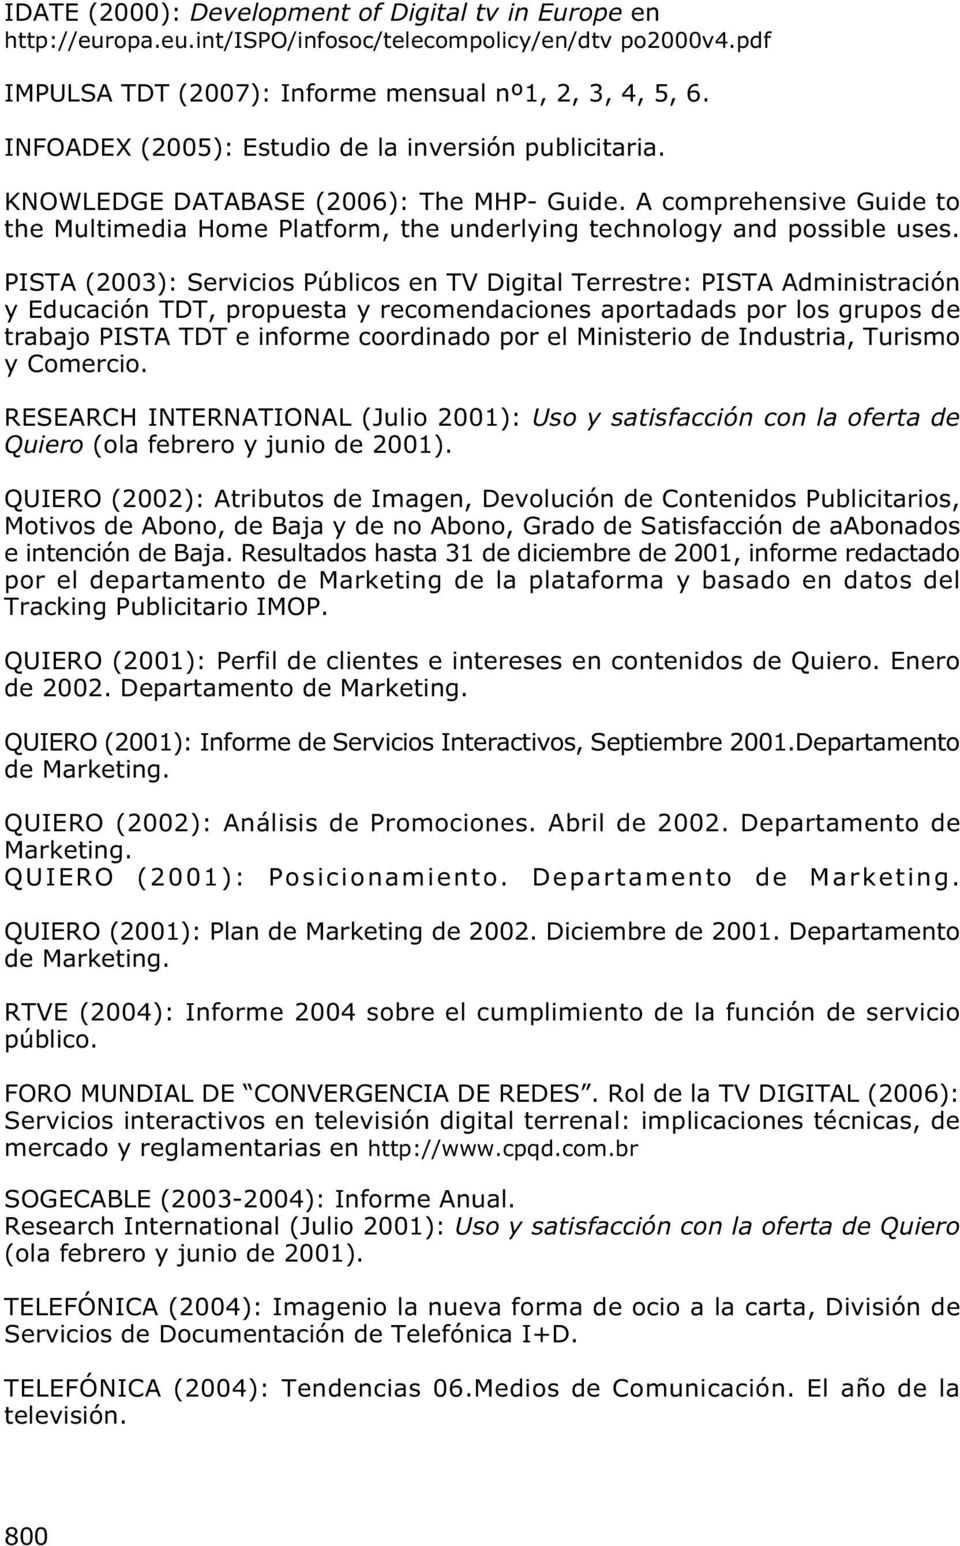 PISTA (2003): Servicios Públicos en TV Digital Terrestre: PISTA Administración y Educación TDT, propuesta y recomendaciones aportadads por los grupos de trabajo PISTA TDT e informe coordinado por el